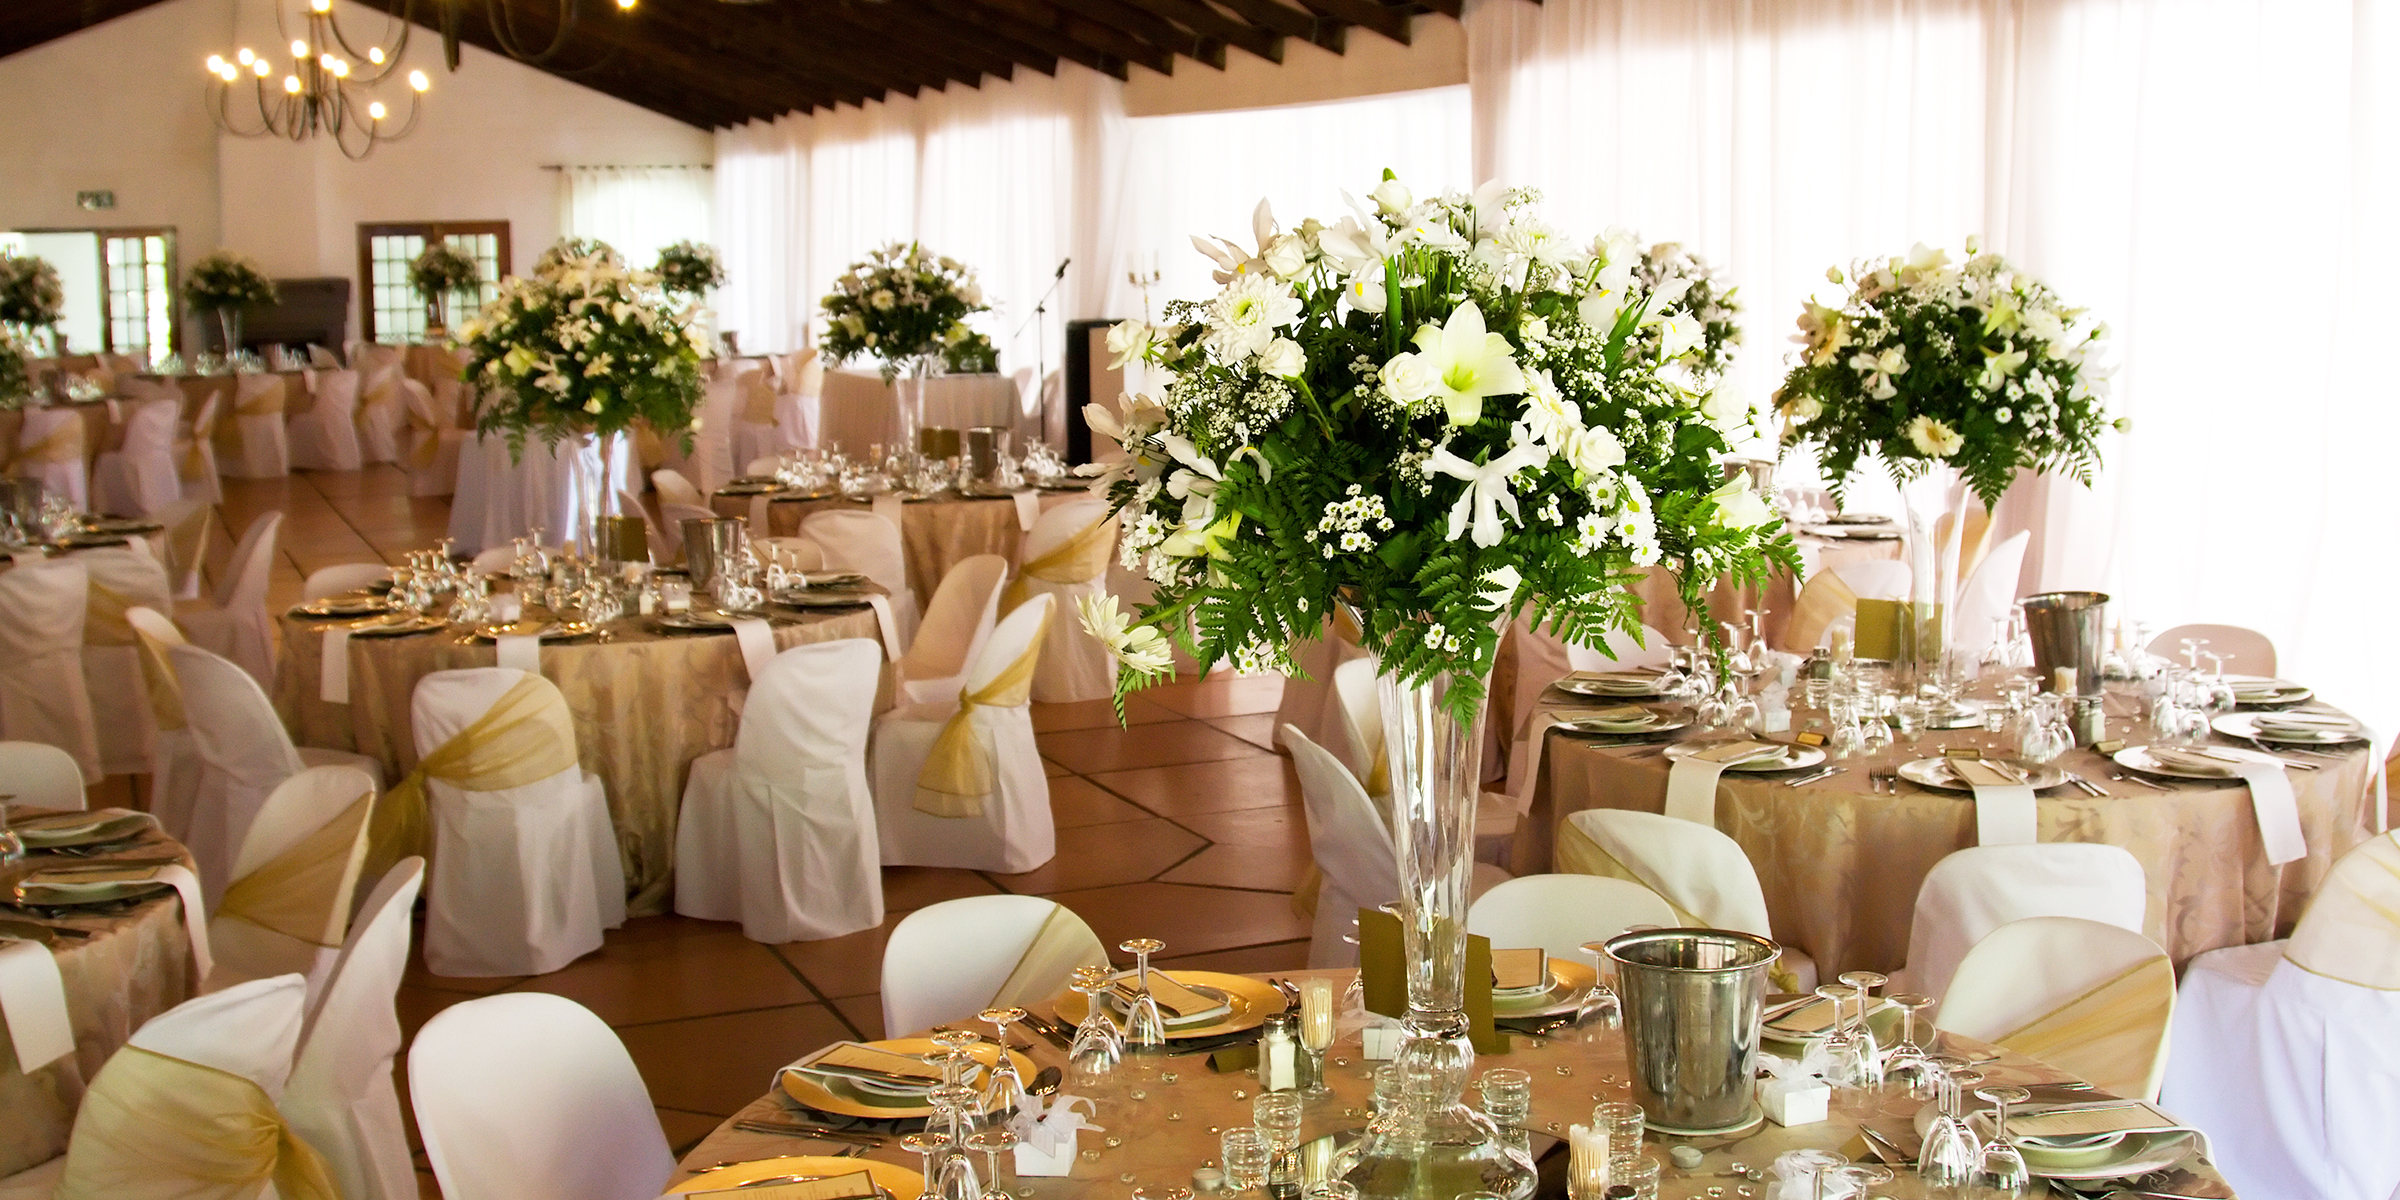 Lugar de boda | Foto: Shutterstock